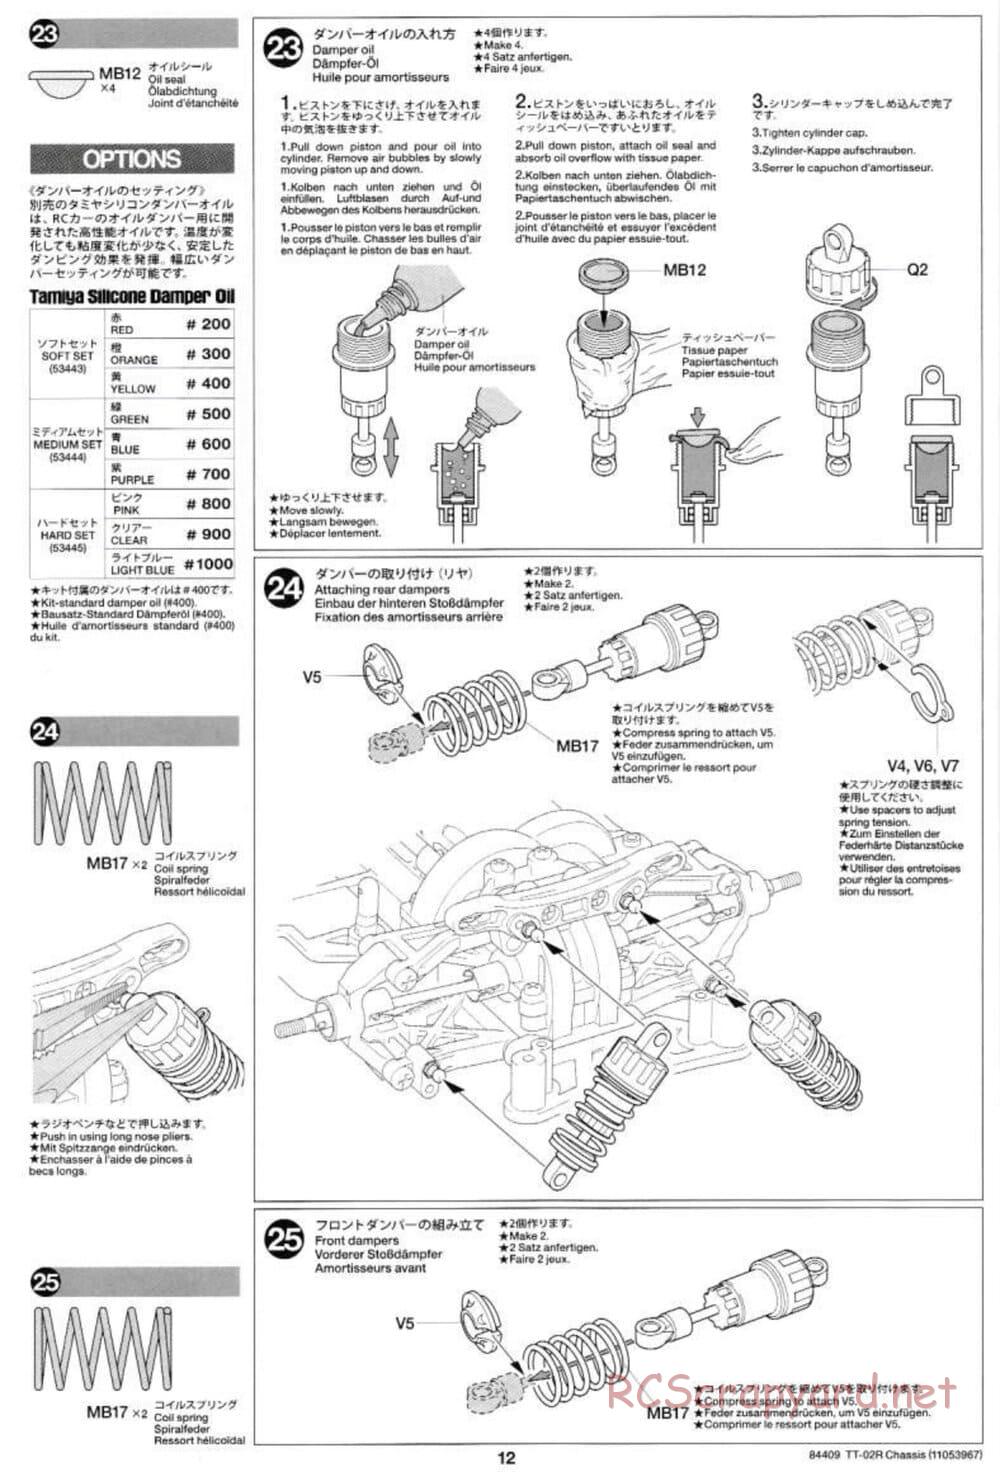 Tamiya - TT-02R Chassis - Manual - Page 12